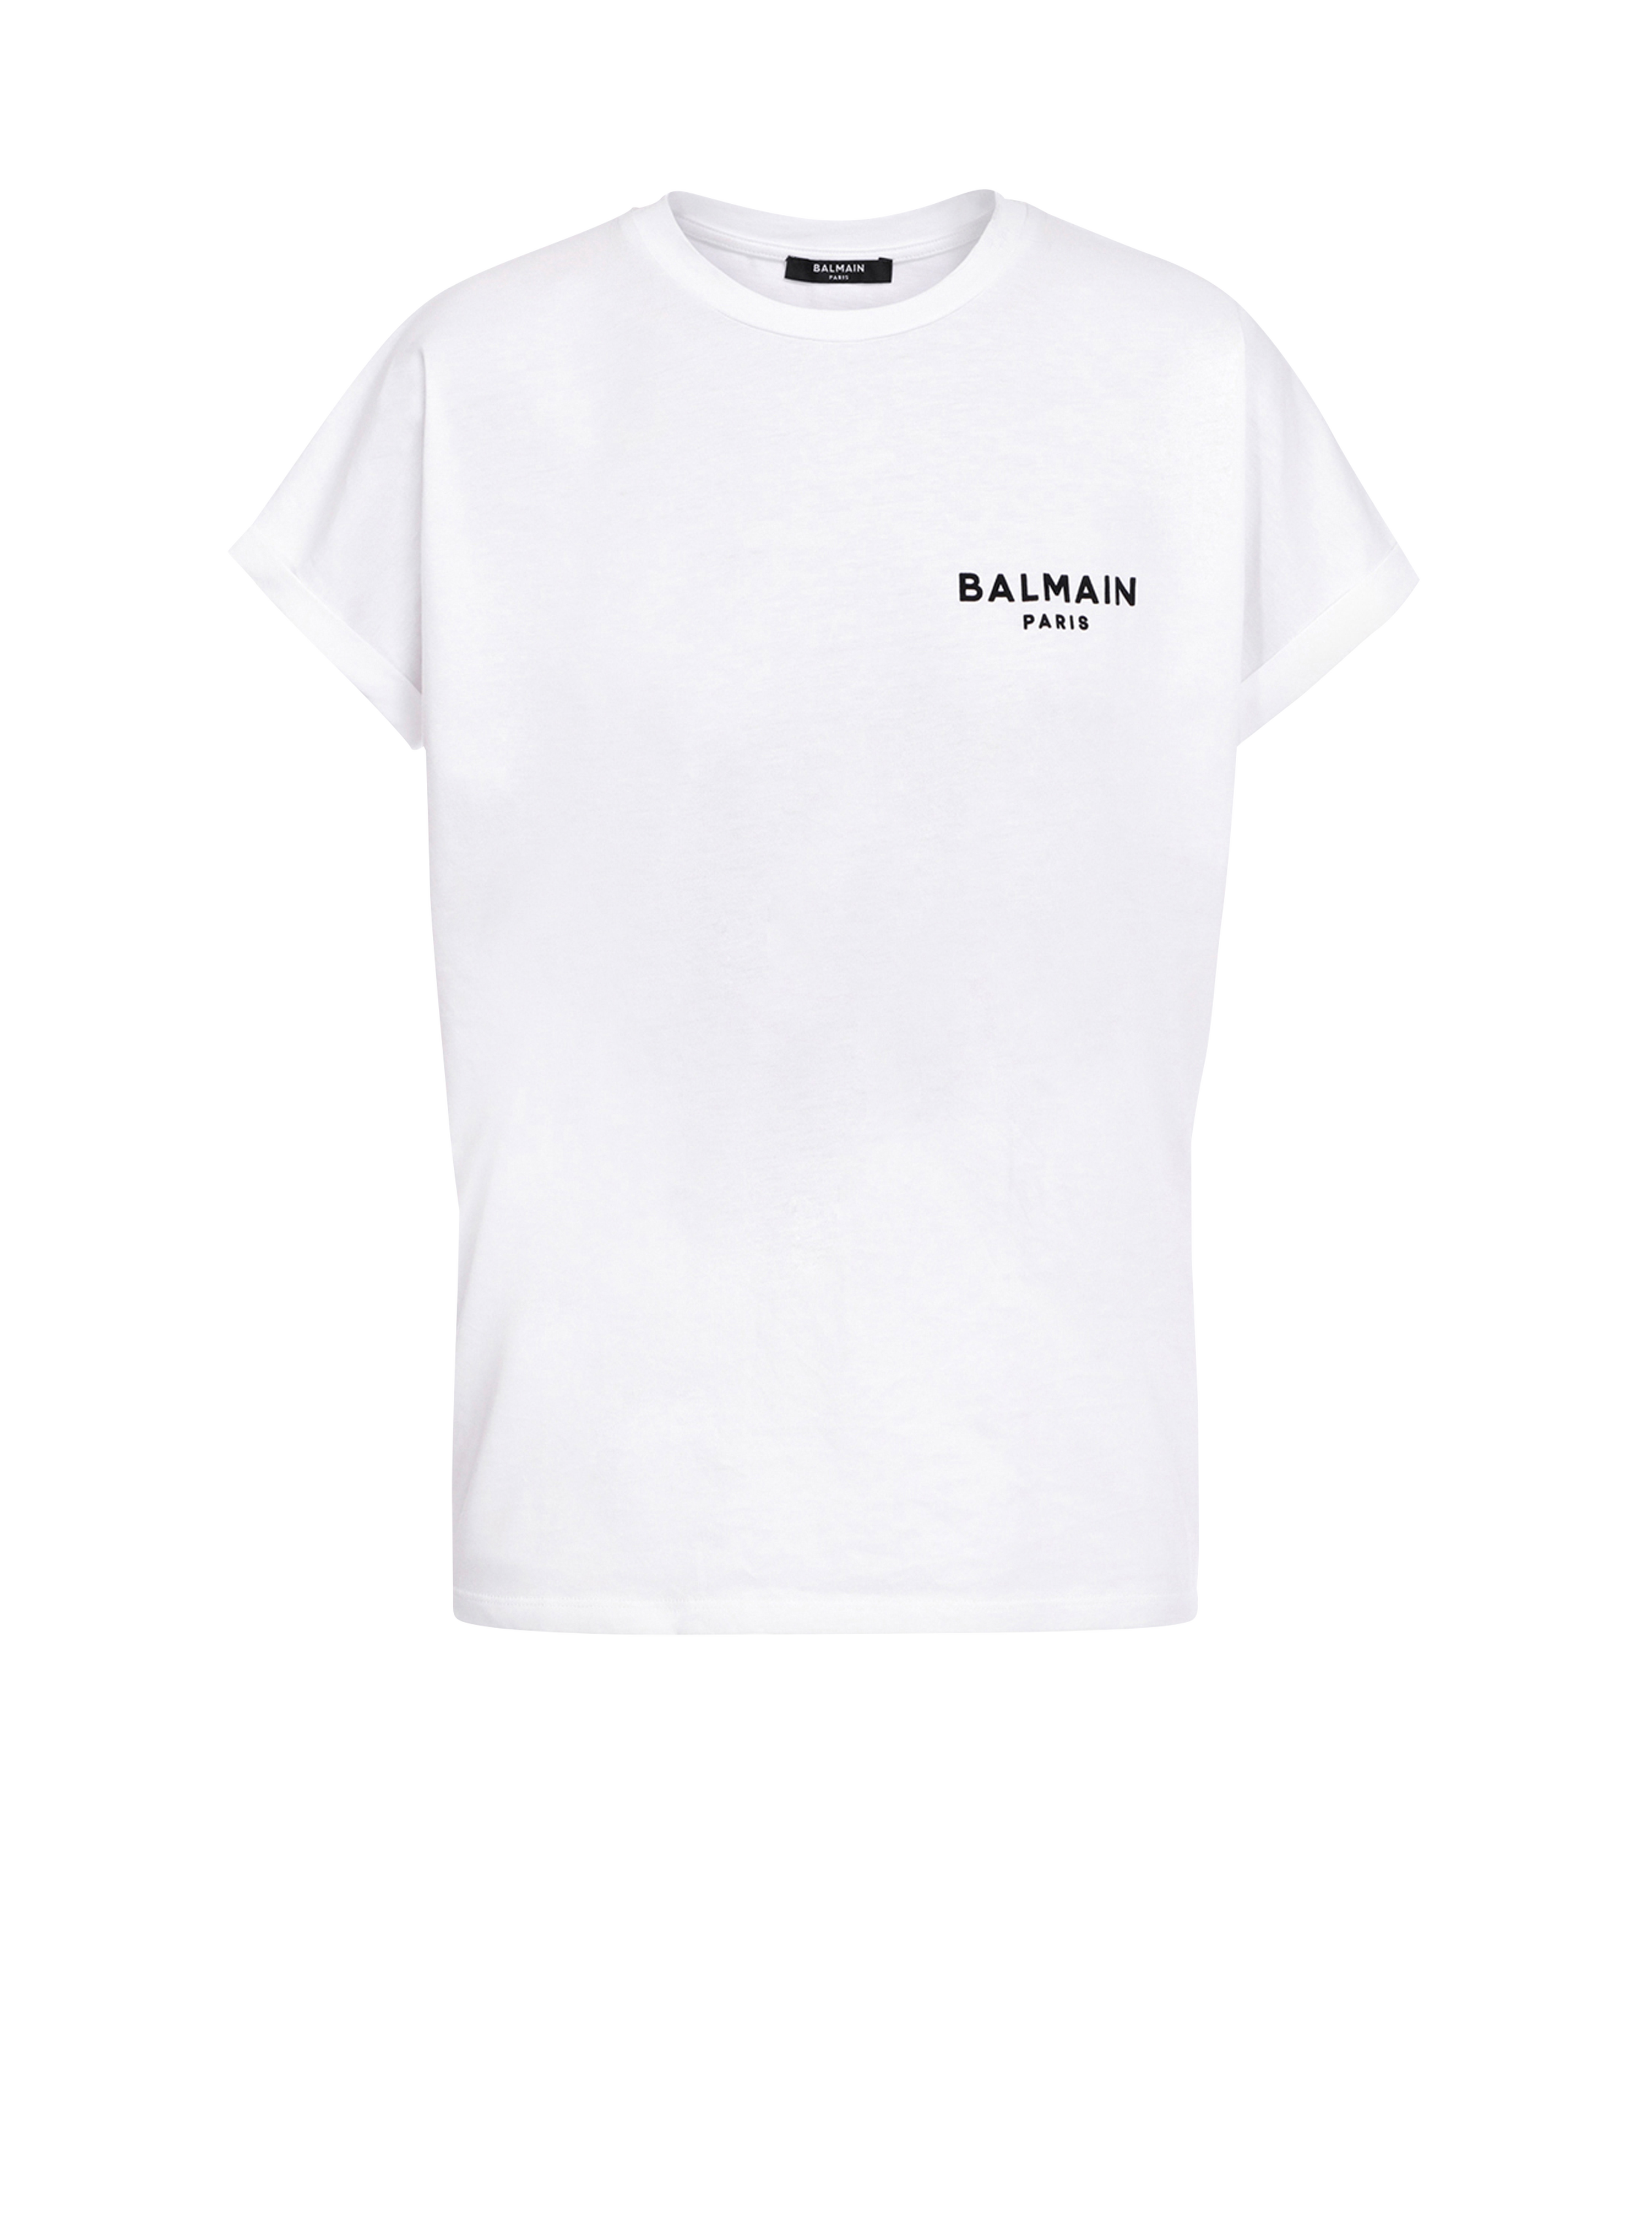 小号植绒 Balmain 徽标装饰短款环保设计棉质 T 恤, white